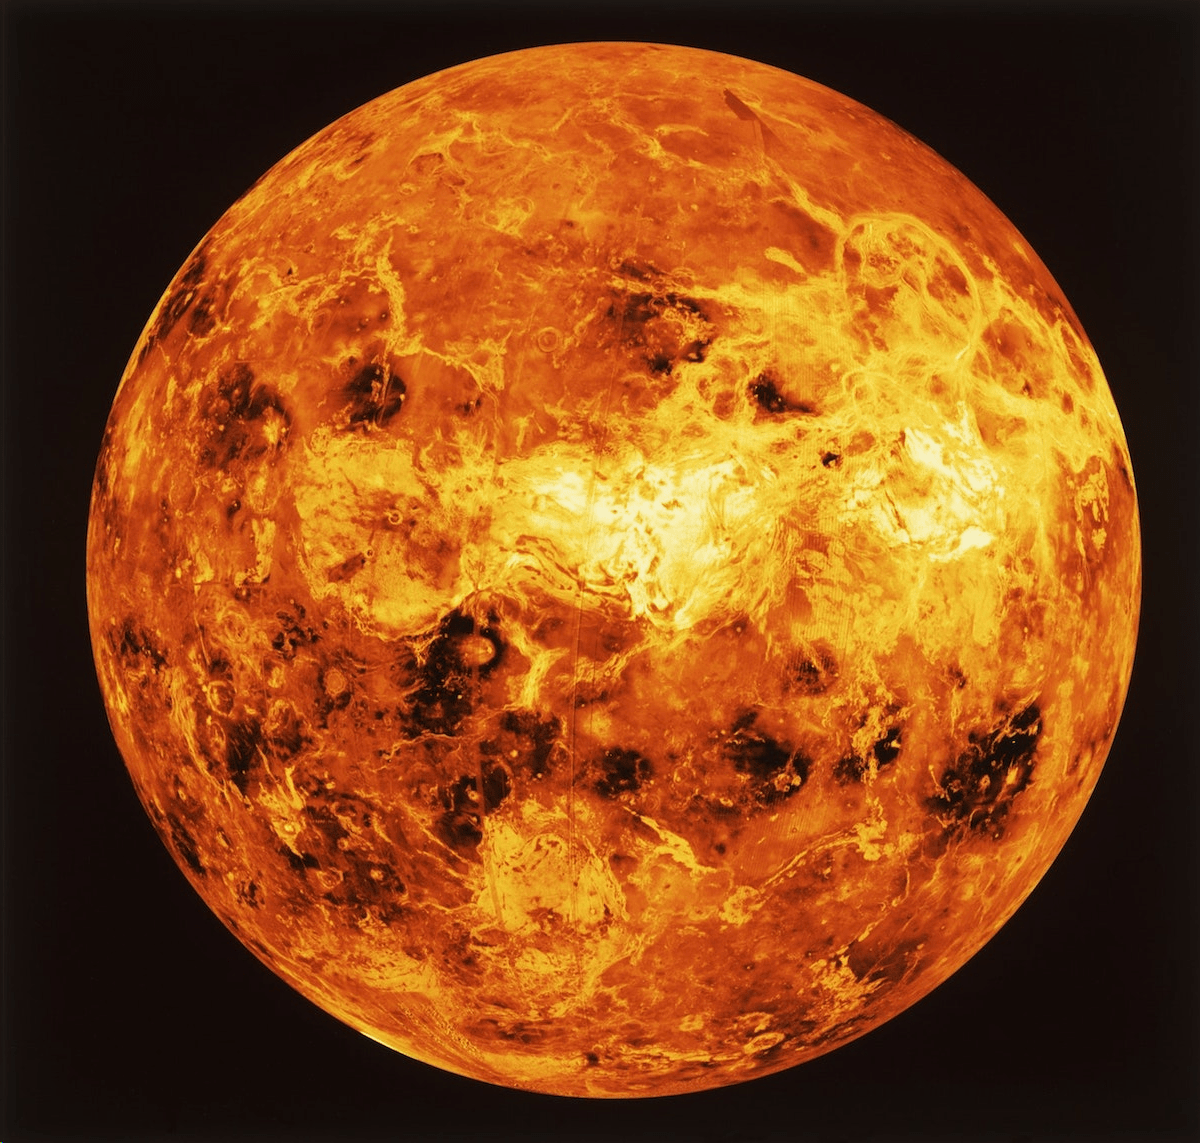 金星正形成大气层,已迈入太阳系生命宜居带?